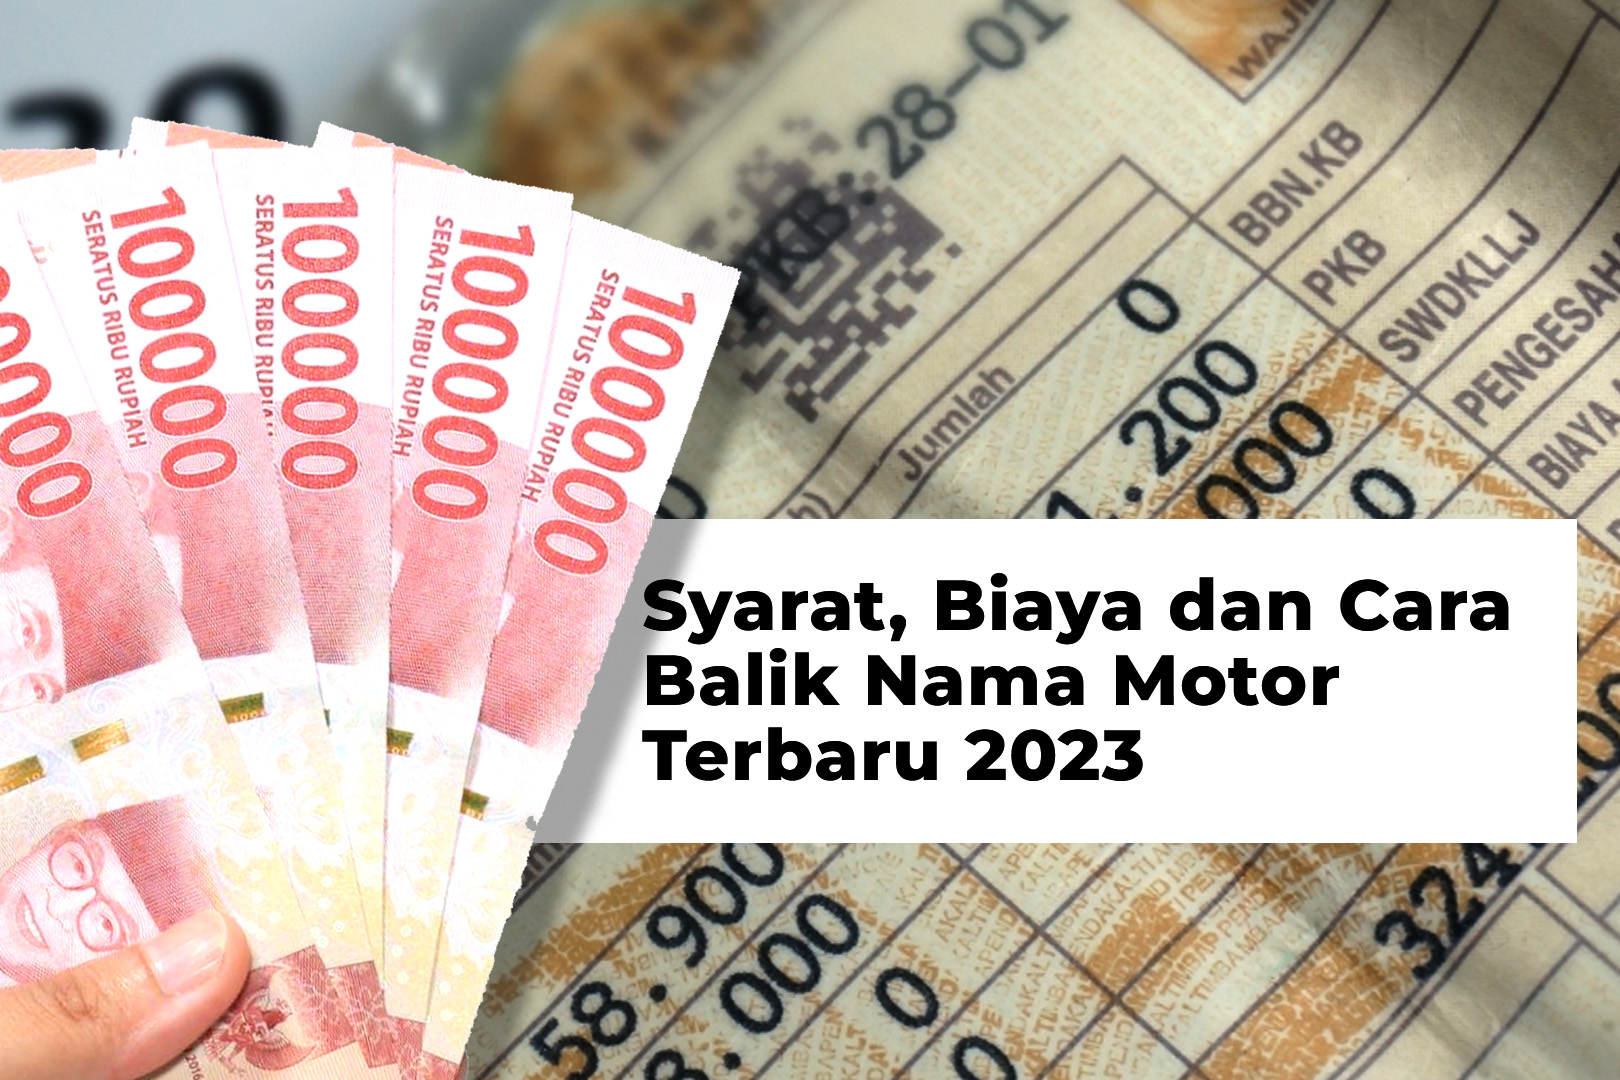 Syarat, Biaya dan Cara Balik Nama Motor Terbaru 2023